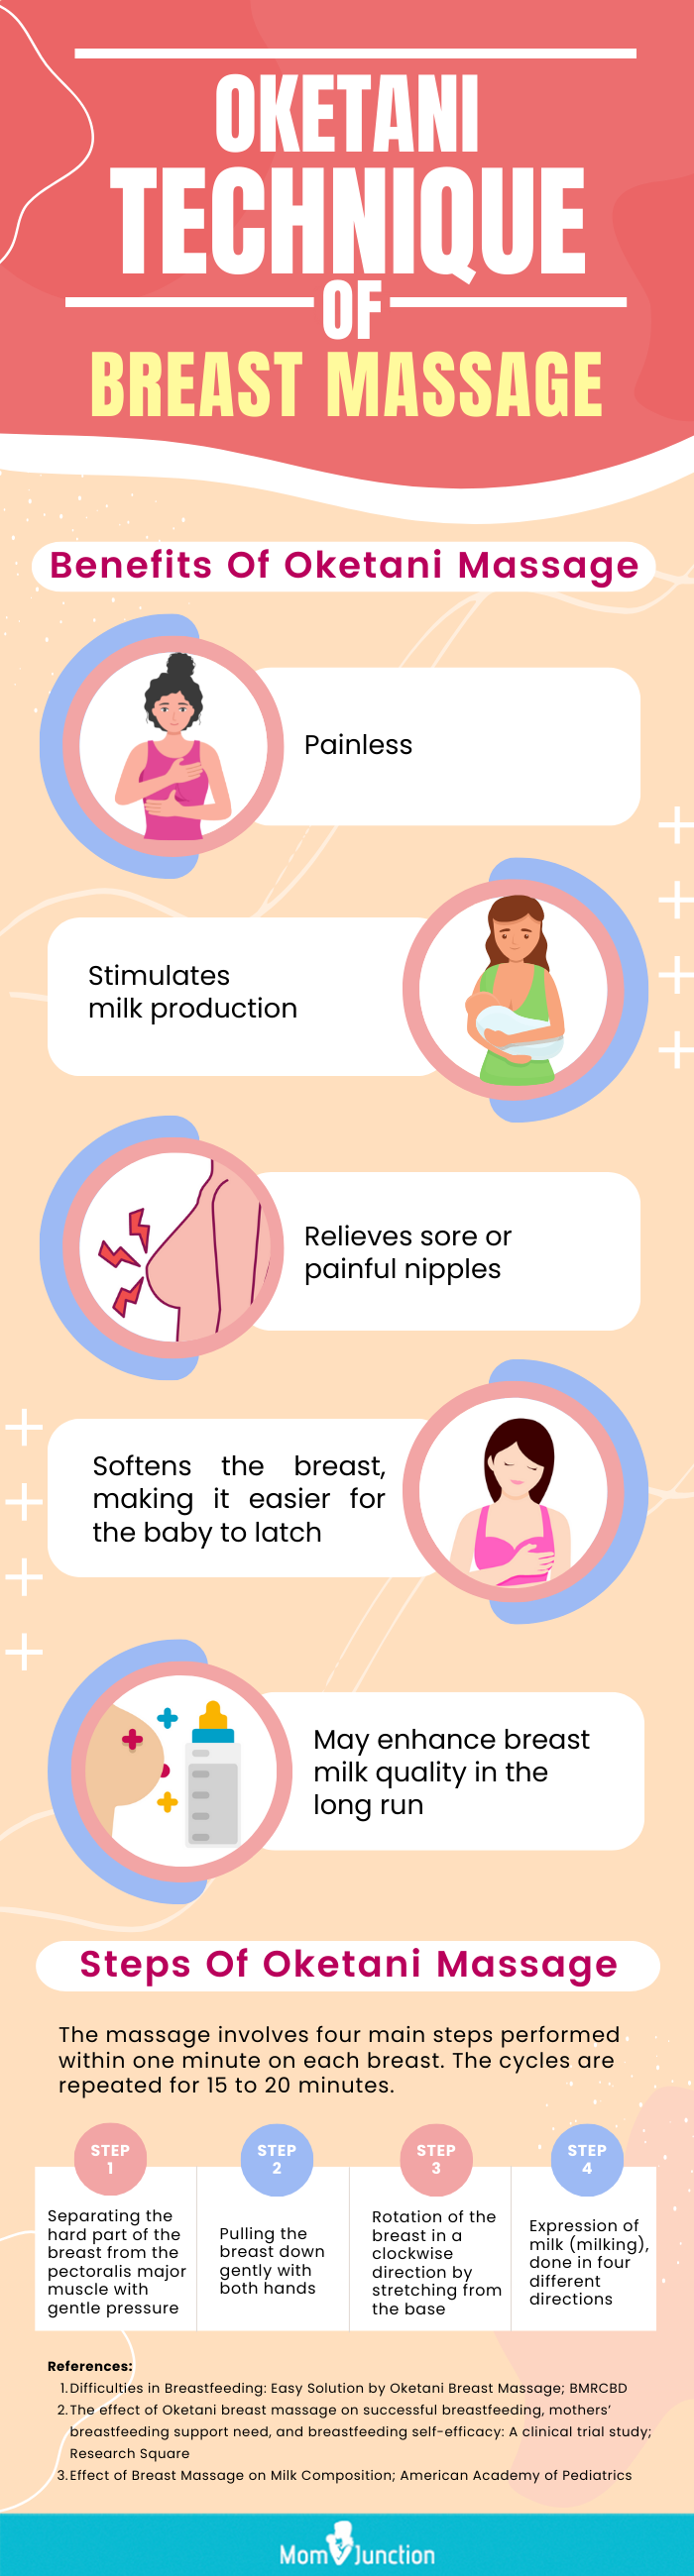 oketani technique of breast massage [infographic]